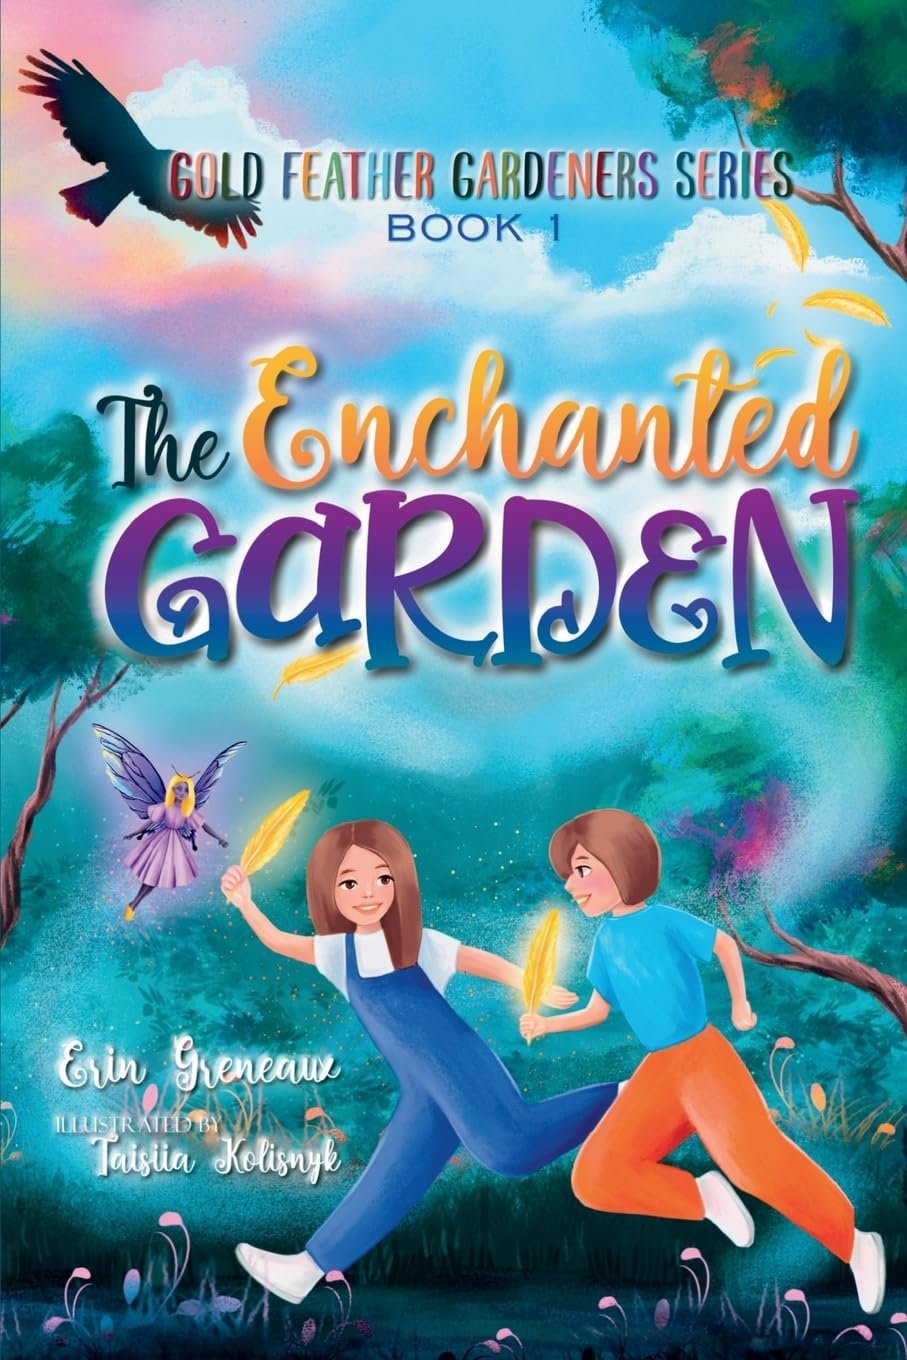 The Enchanted Garden Book Review